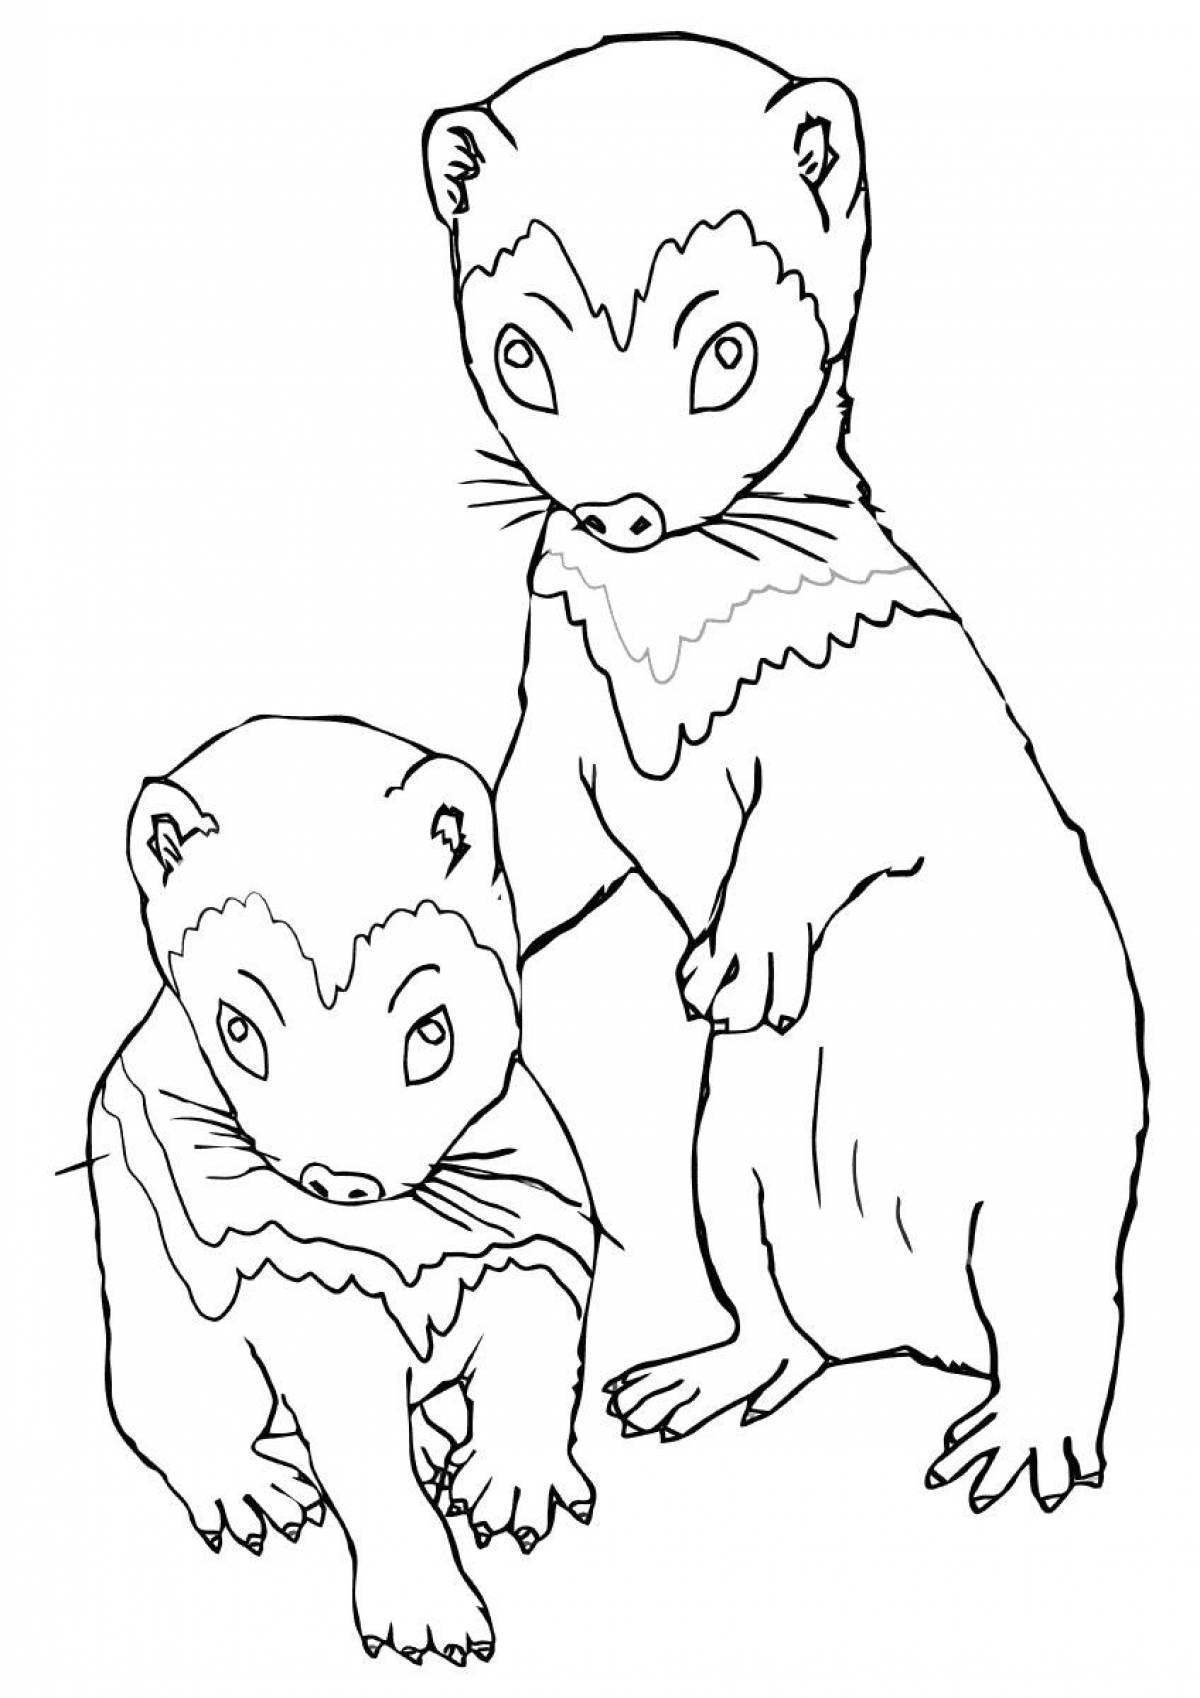 Ferret with a cub